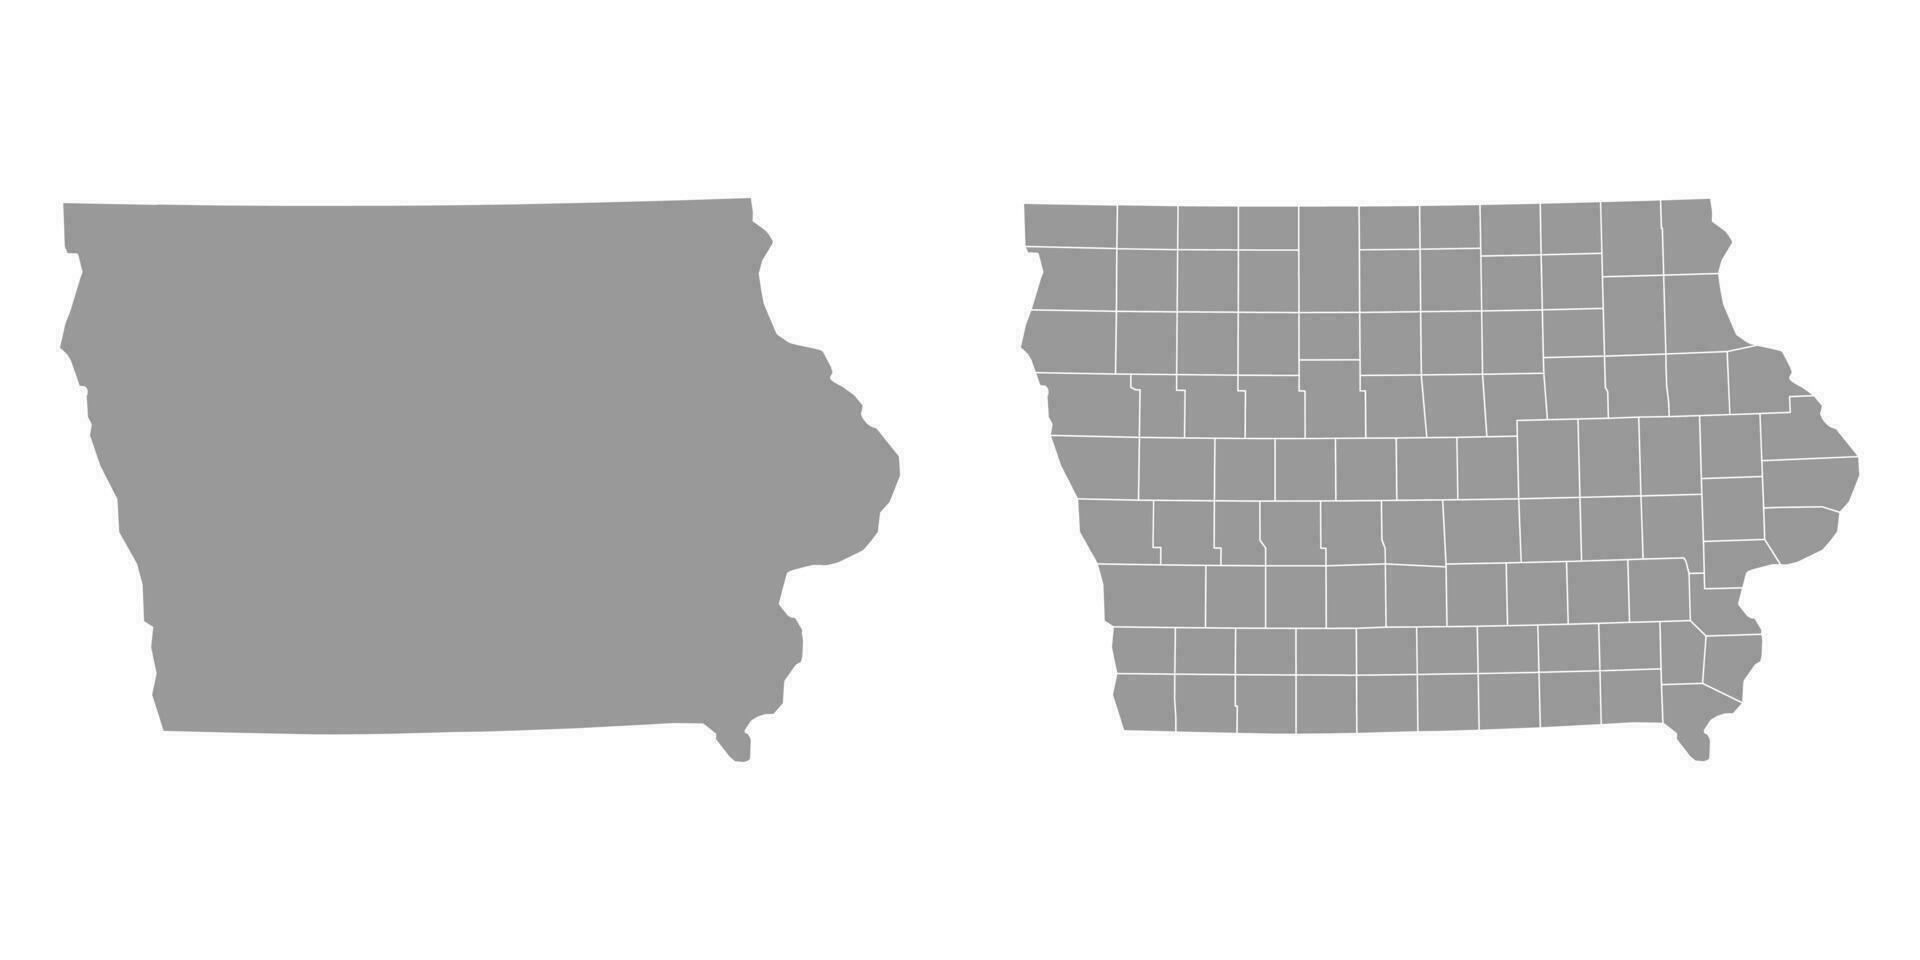 Iowa staat grijs kaarten. vector illustratie.